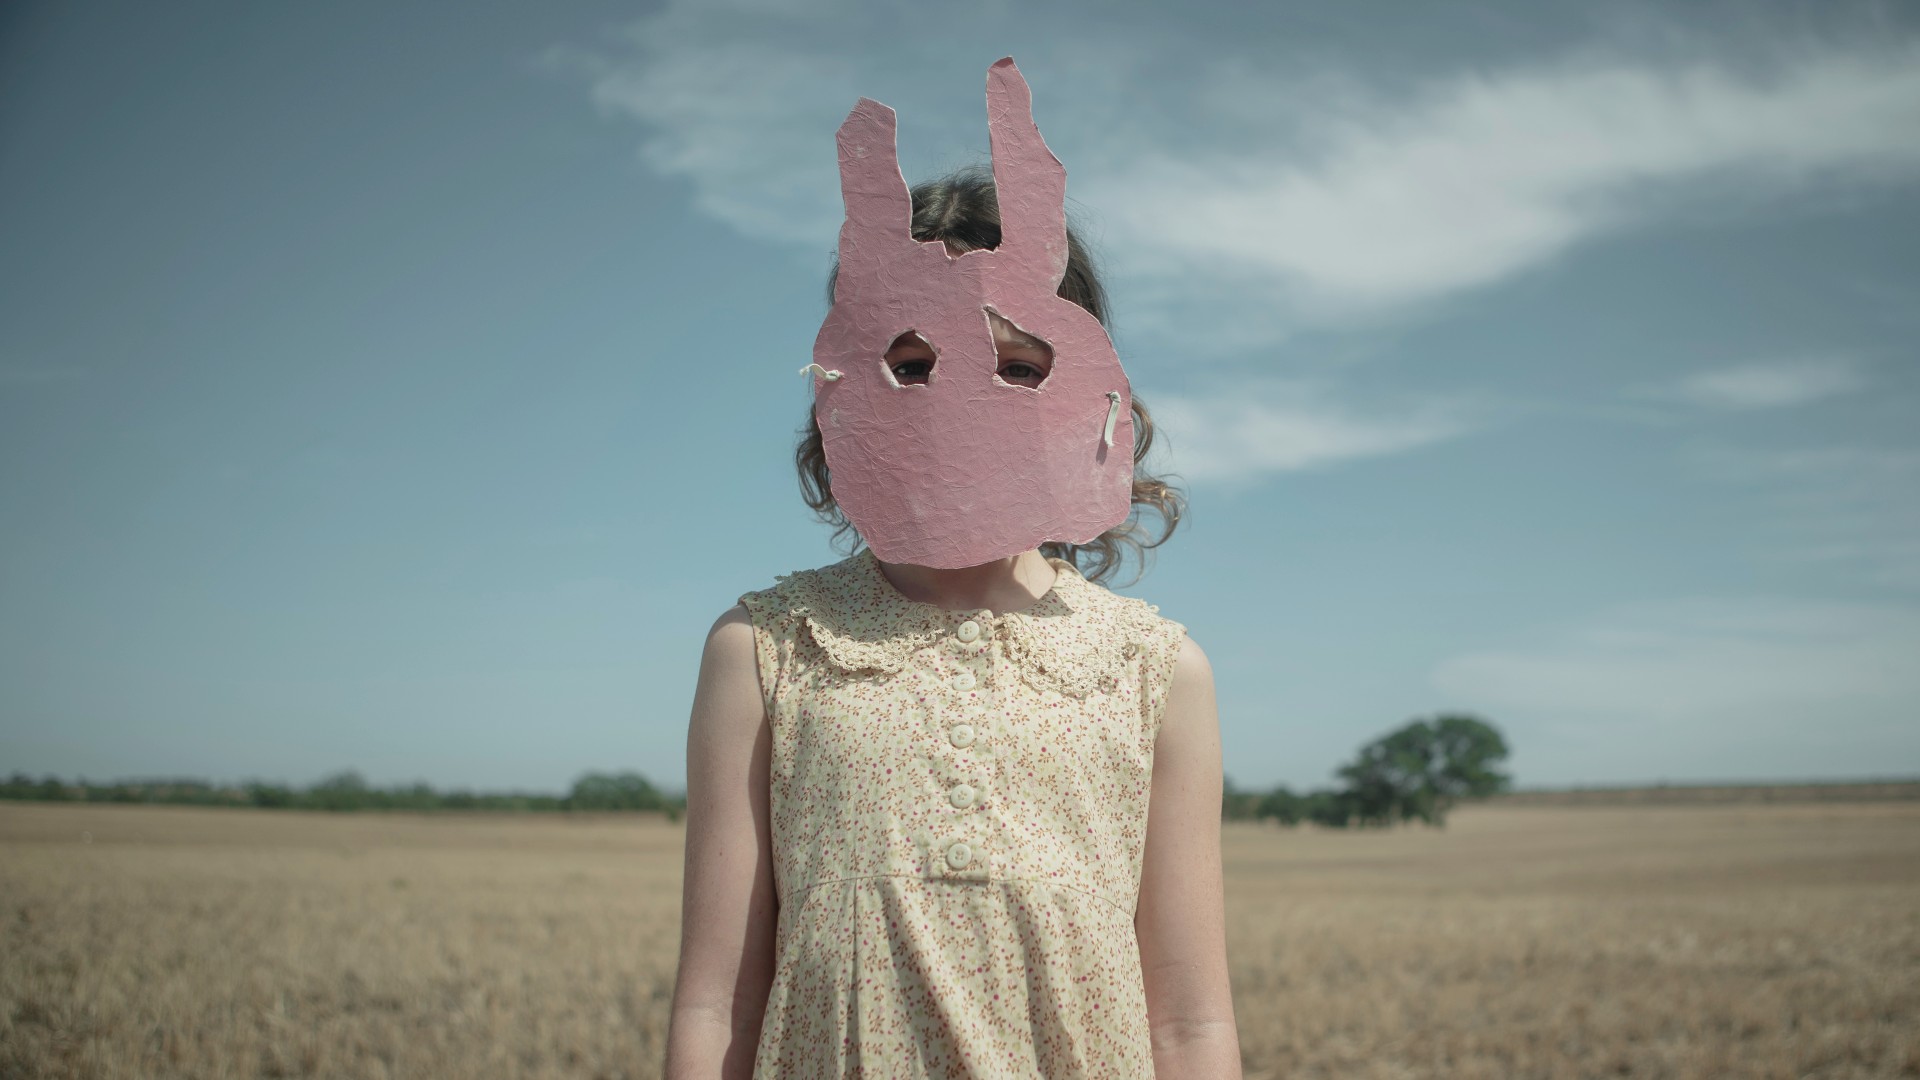 A girl wearing a rabbit mask stands in Run Rabbit Run.